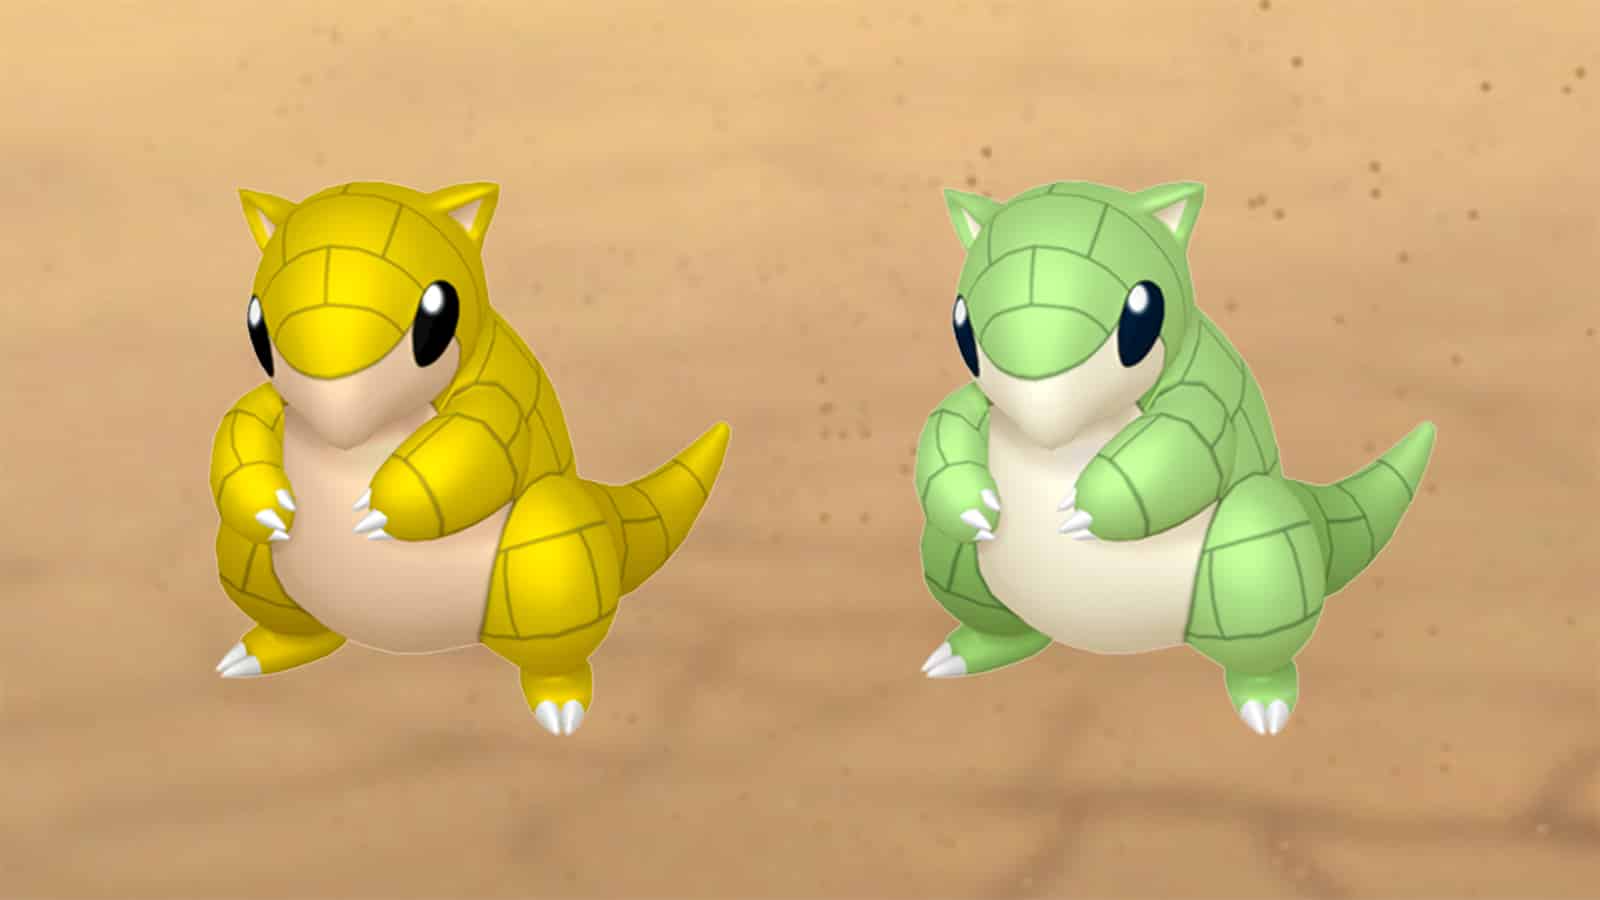 Shiny Sandshrew appearing in Pokemon Go